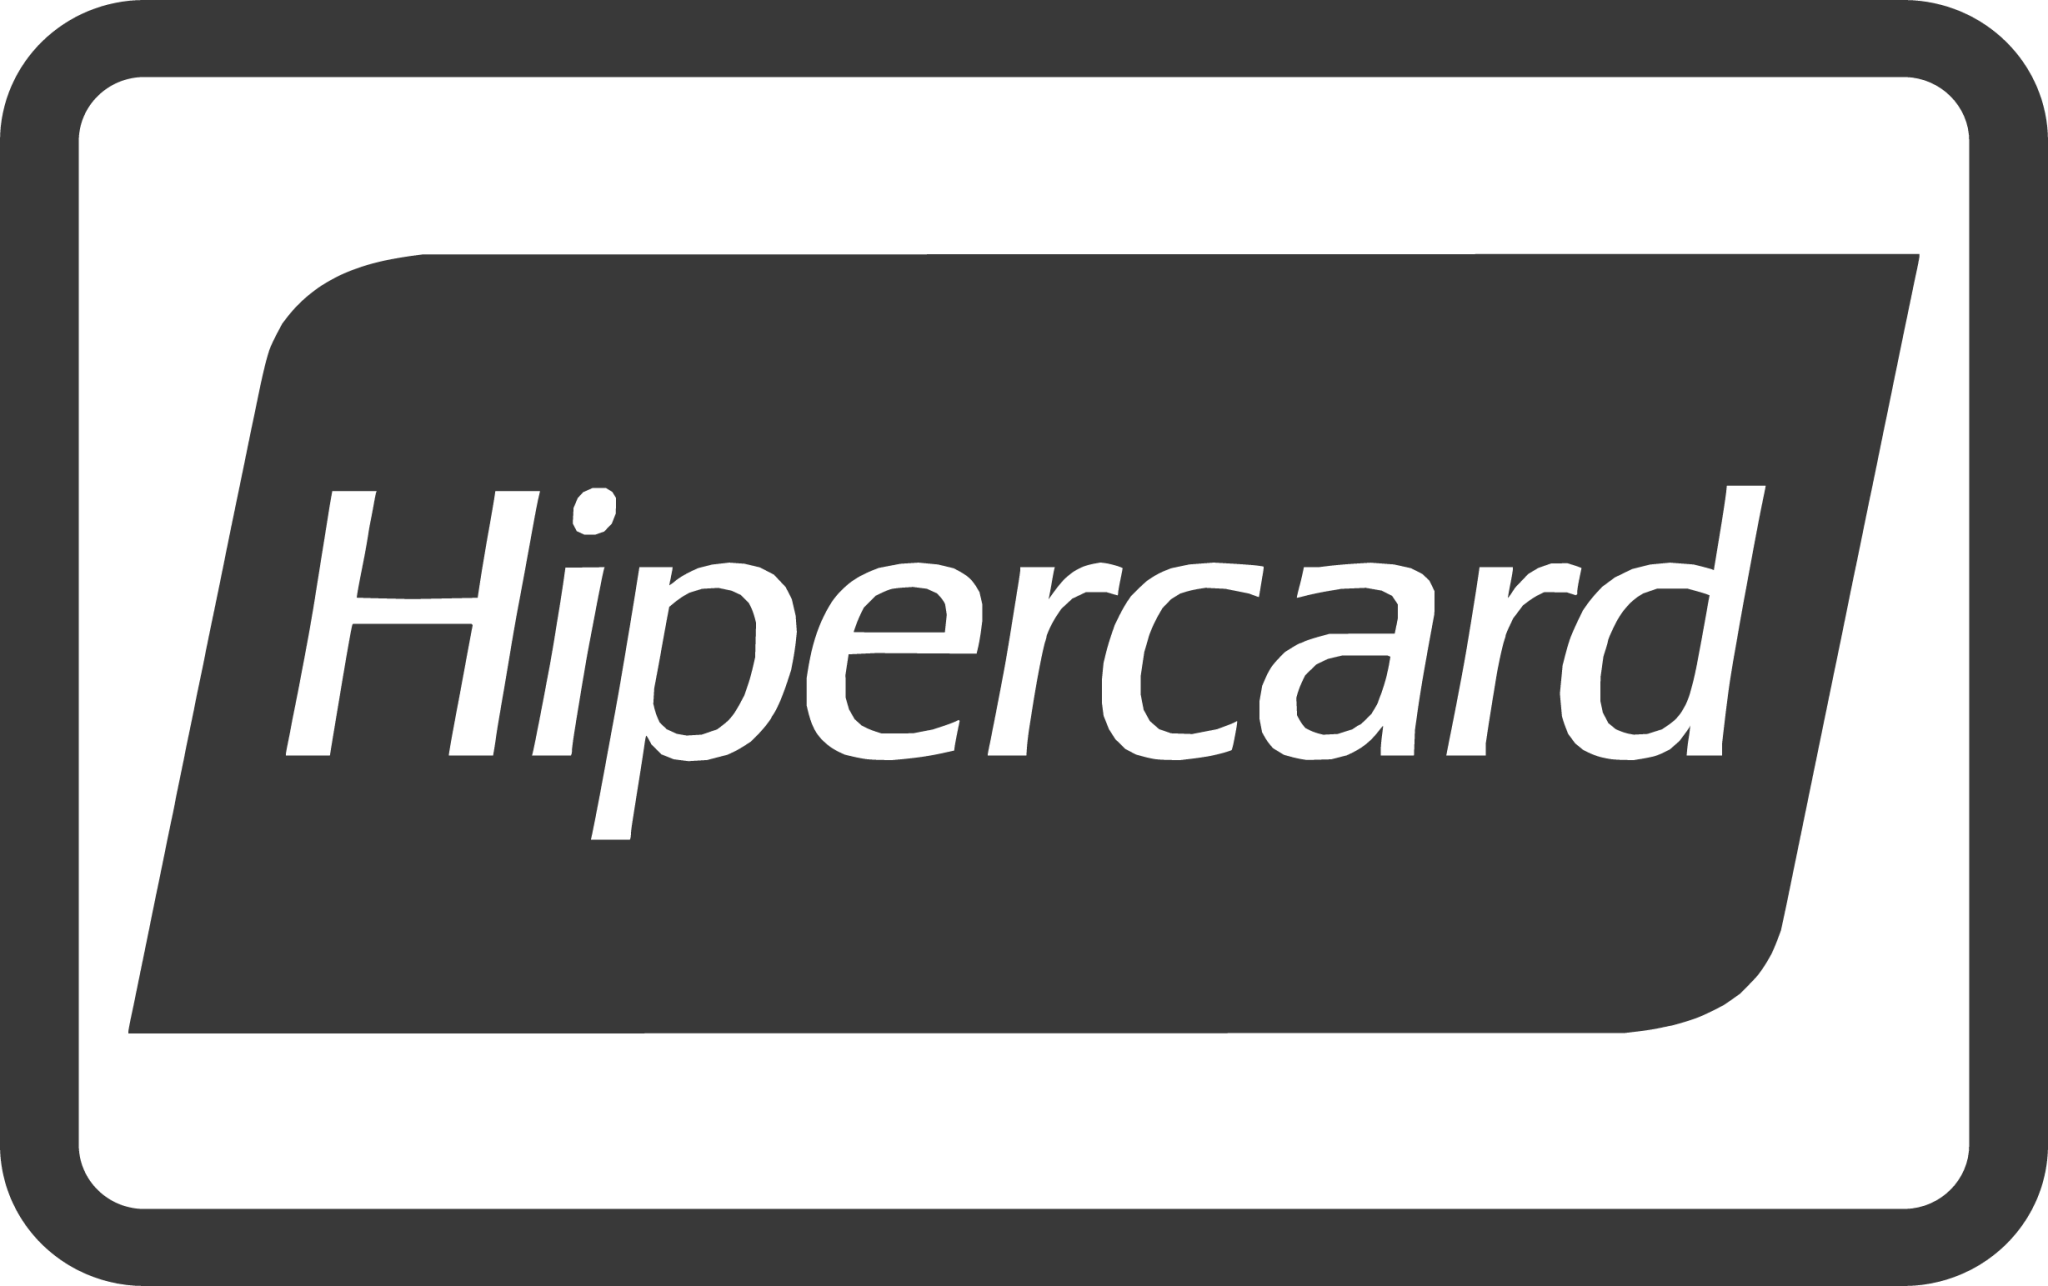 hipercard icon